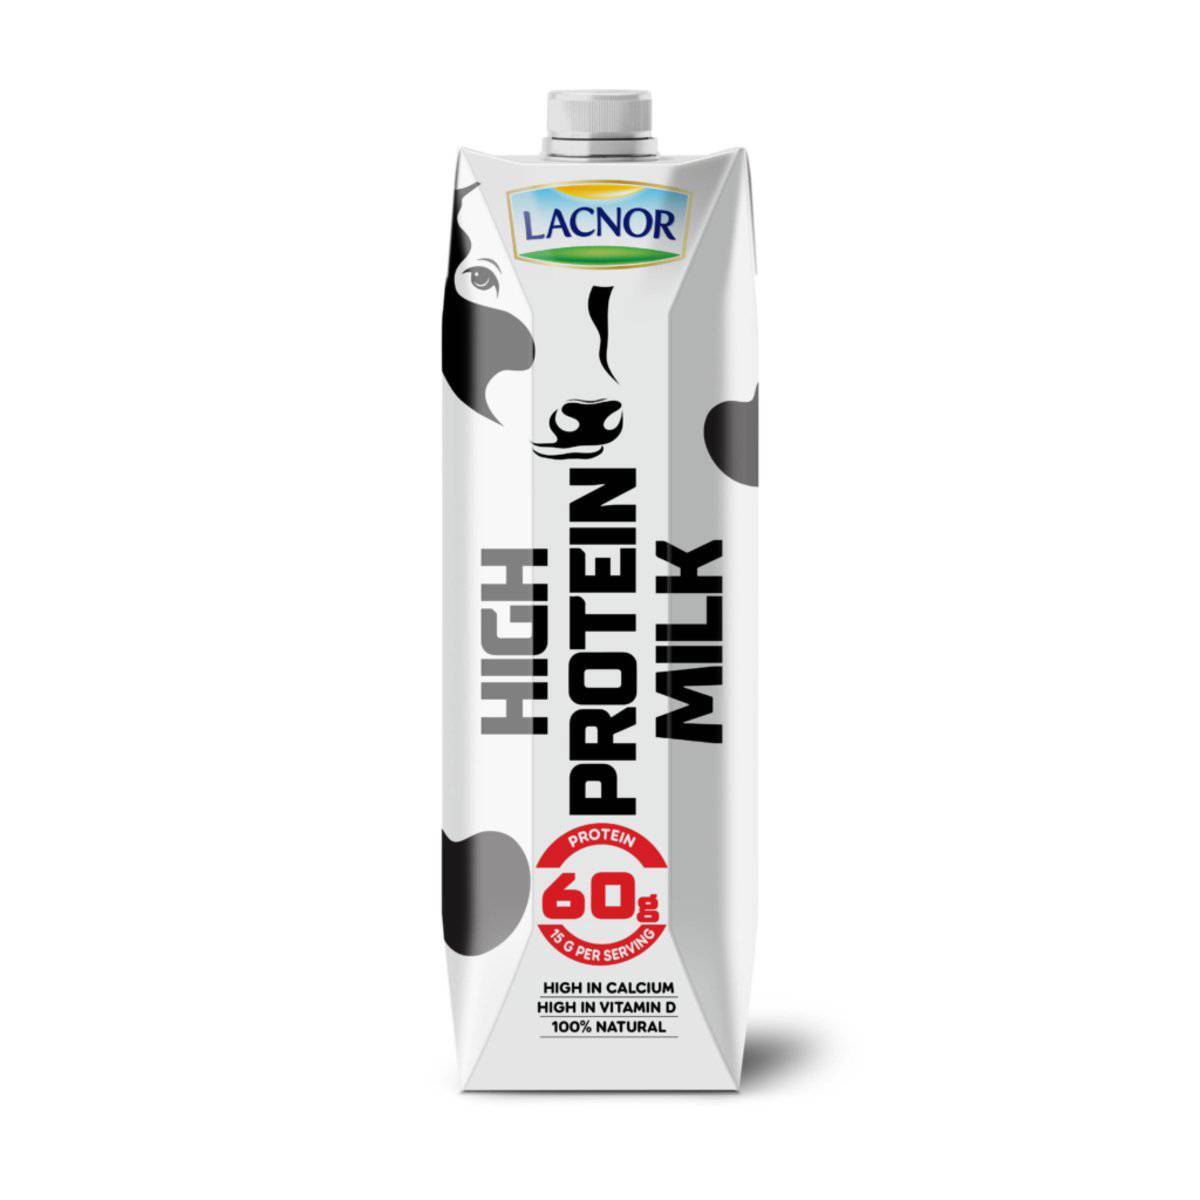 Lacnor High Protein UHT Milk 6 x 1 Litre